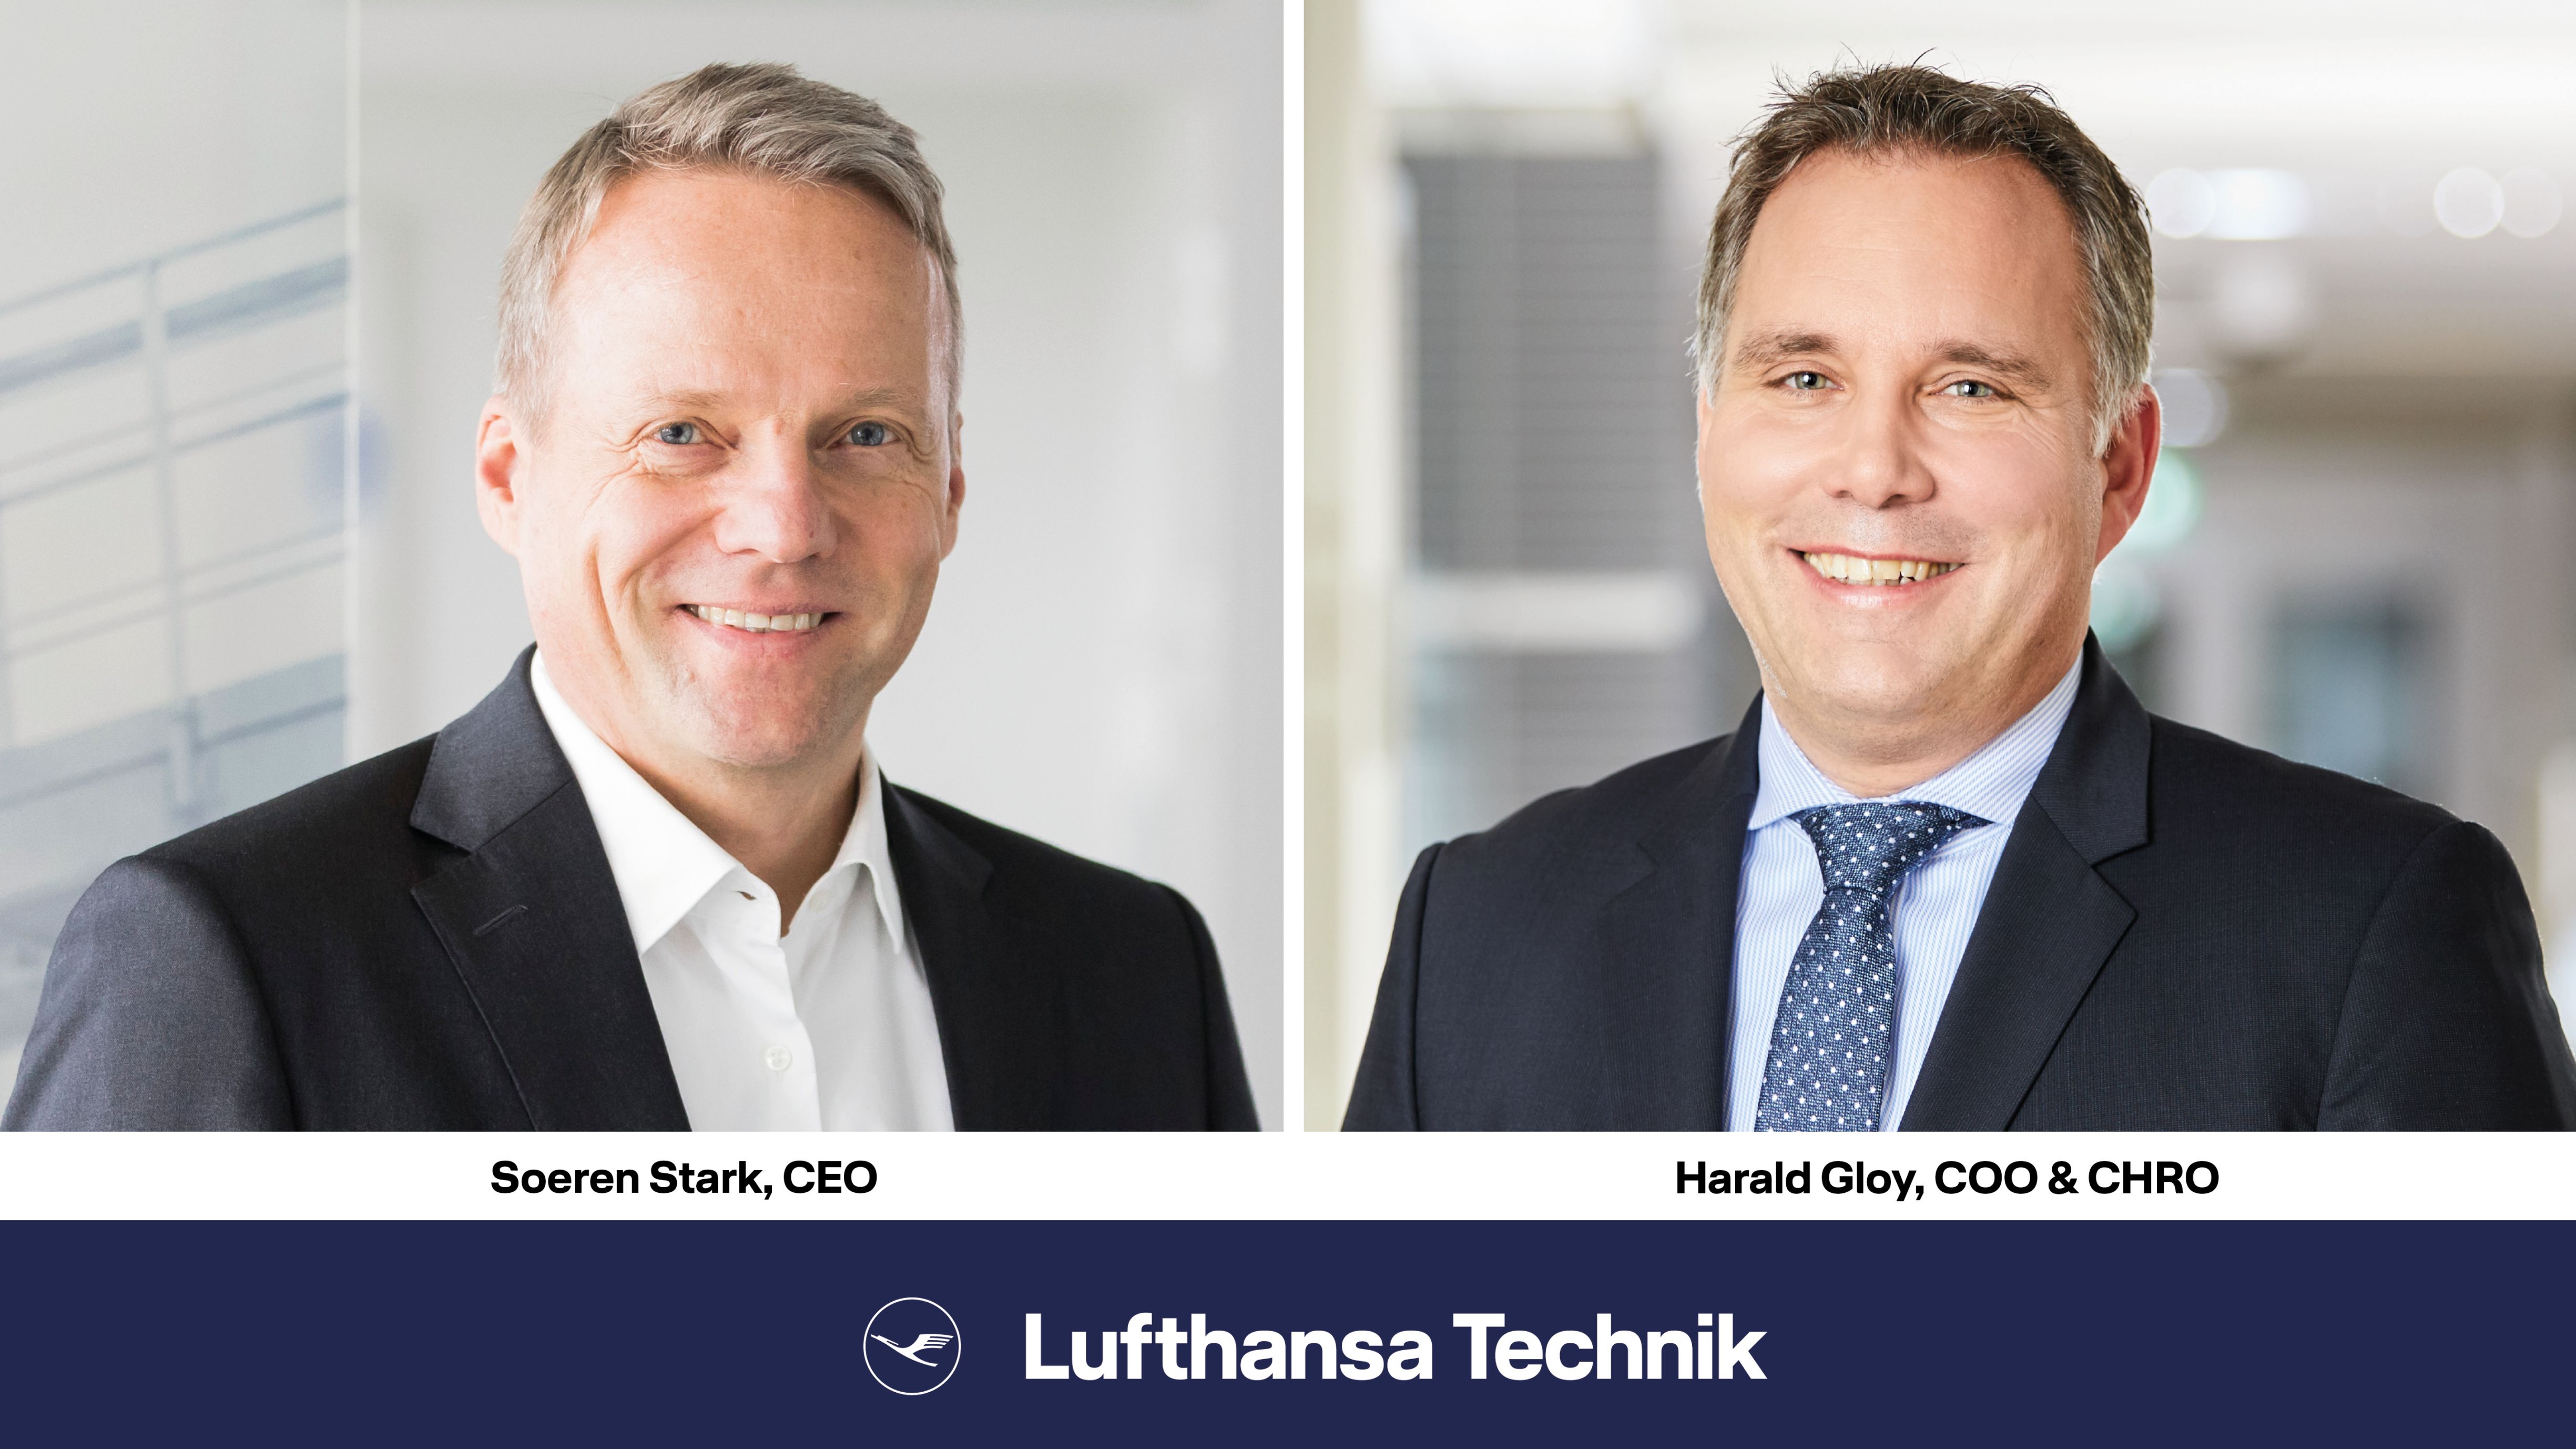 Sören Stark appointed CEO of Lufthansa Technik